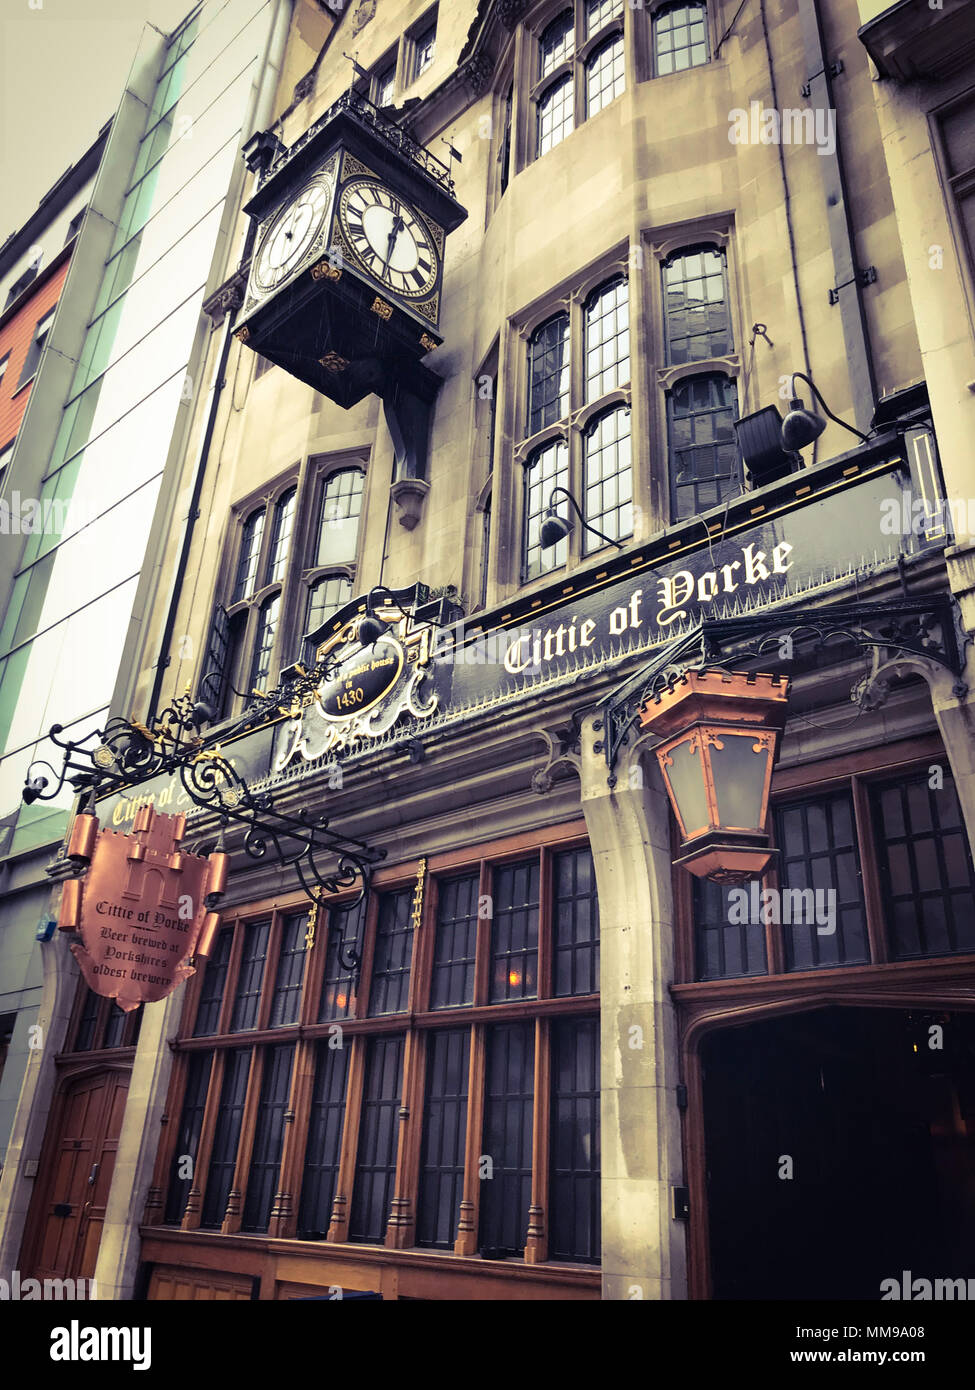 Citte von Yorke Pub, Chancelry Lane, Holborn, London, England, Großbritannien Stockfoto